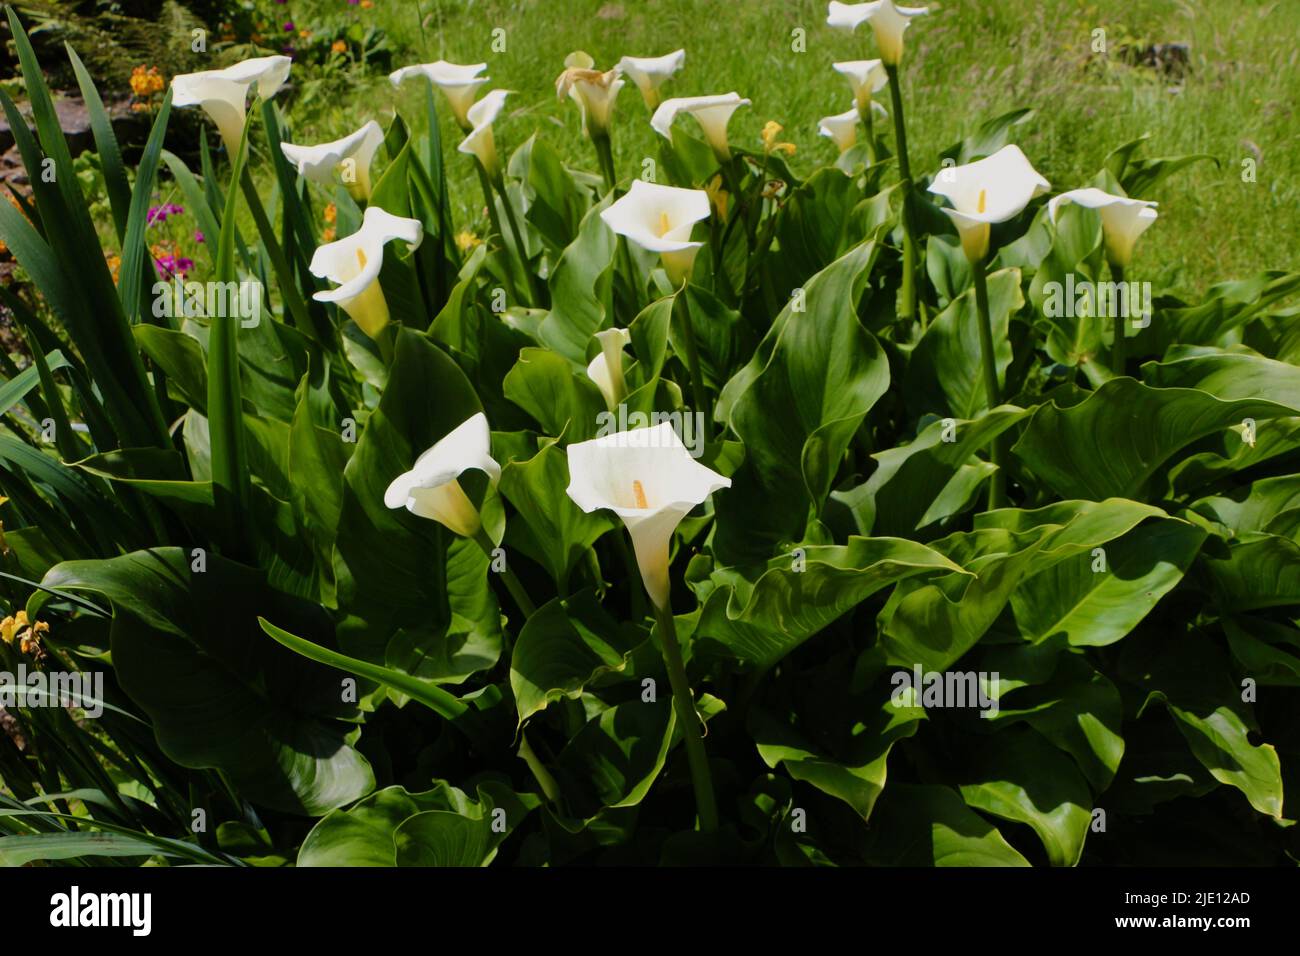 Zantedeschia aethiopica calla lily flowers Stock Photo